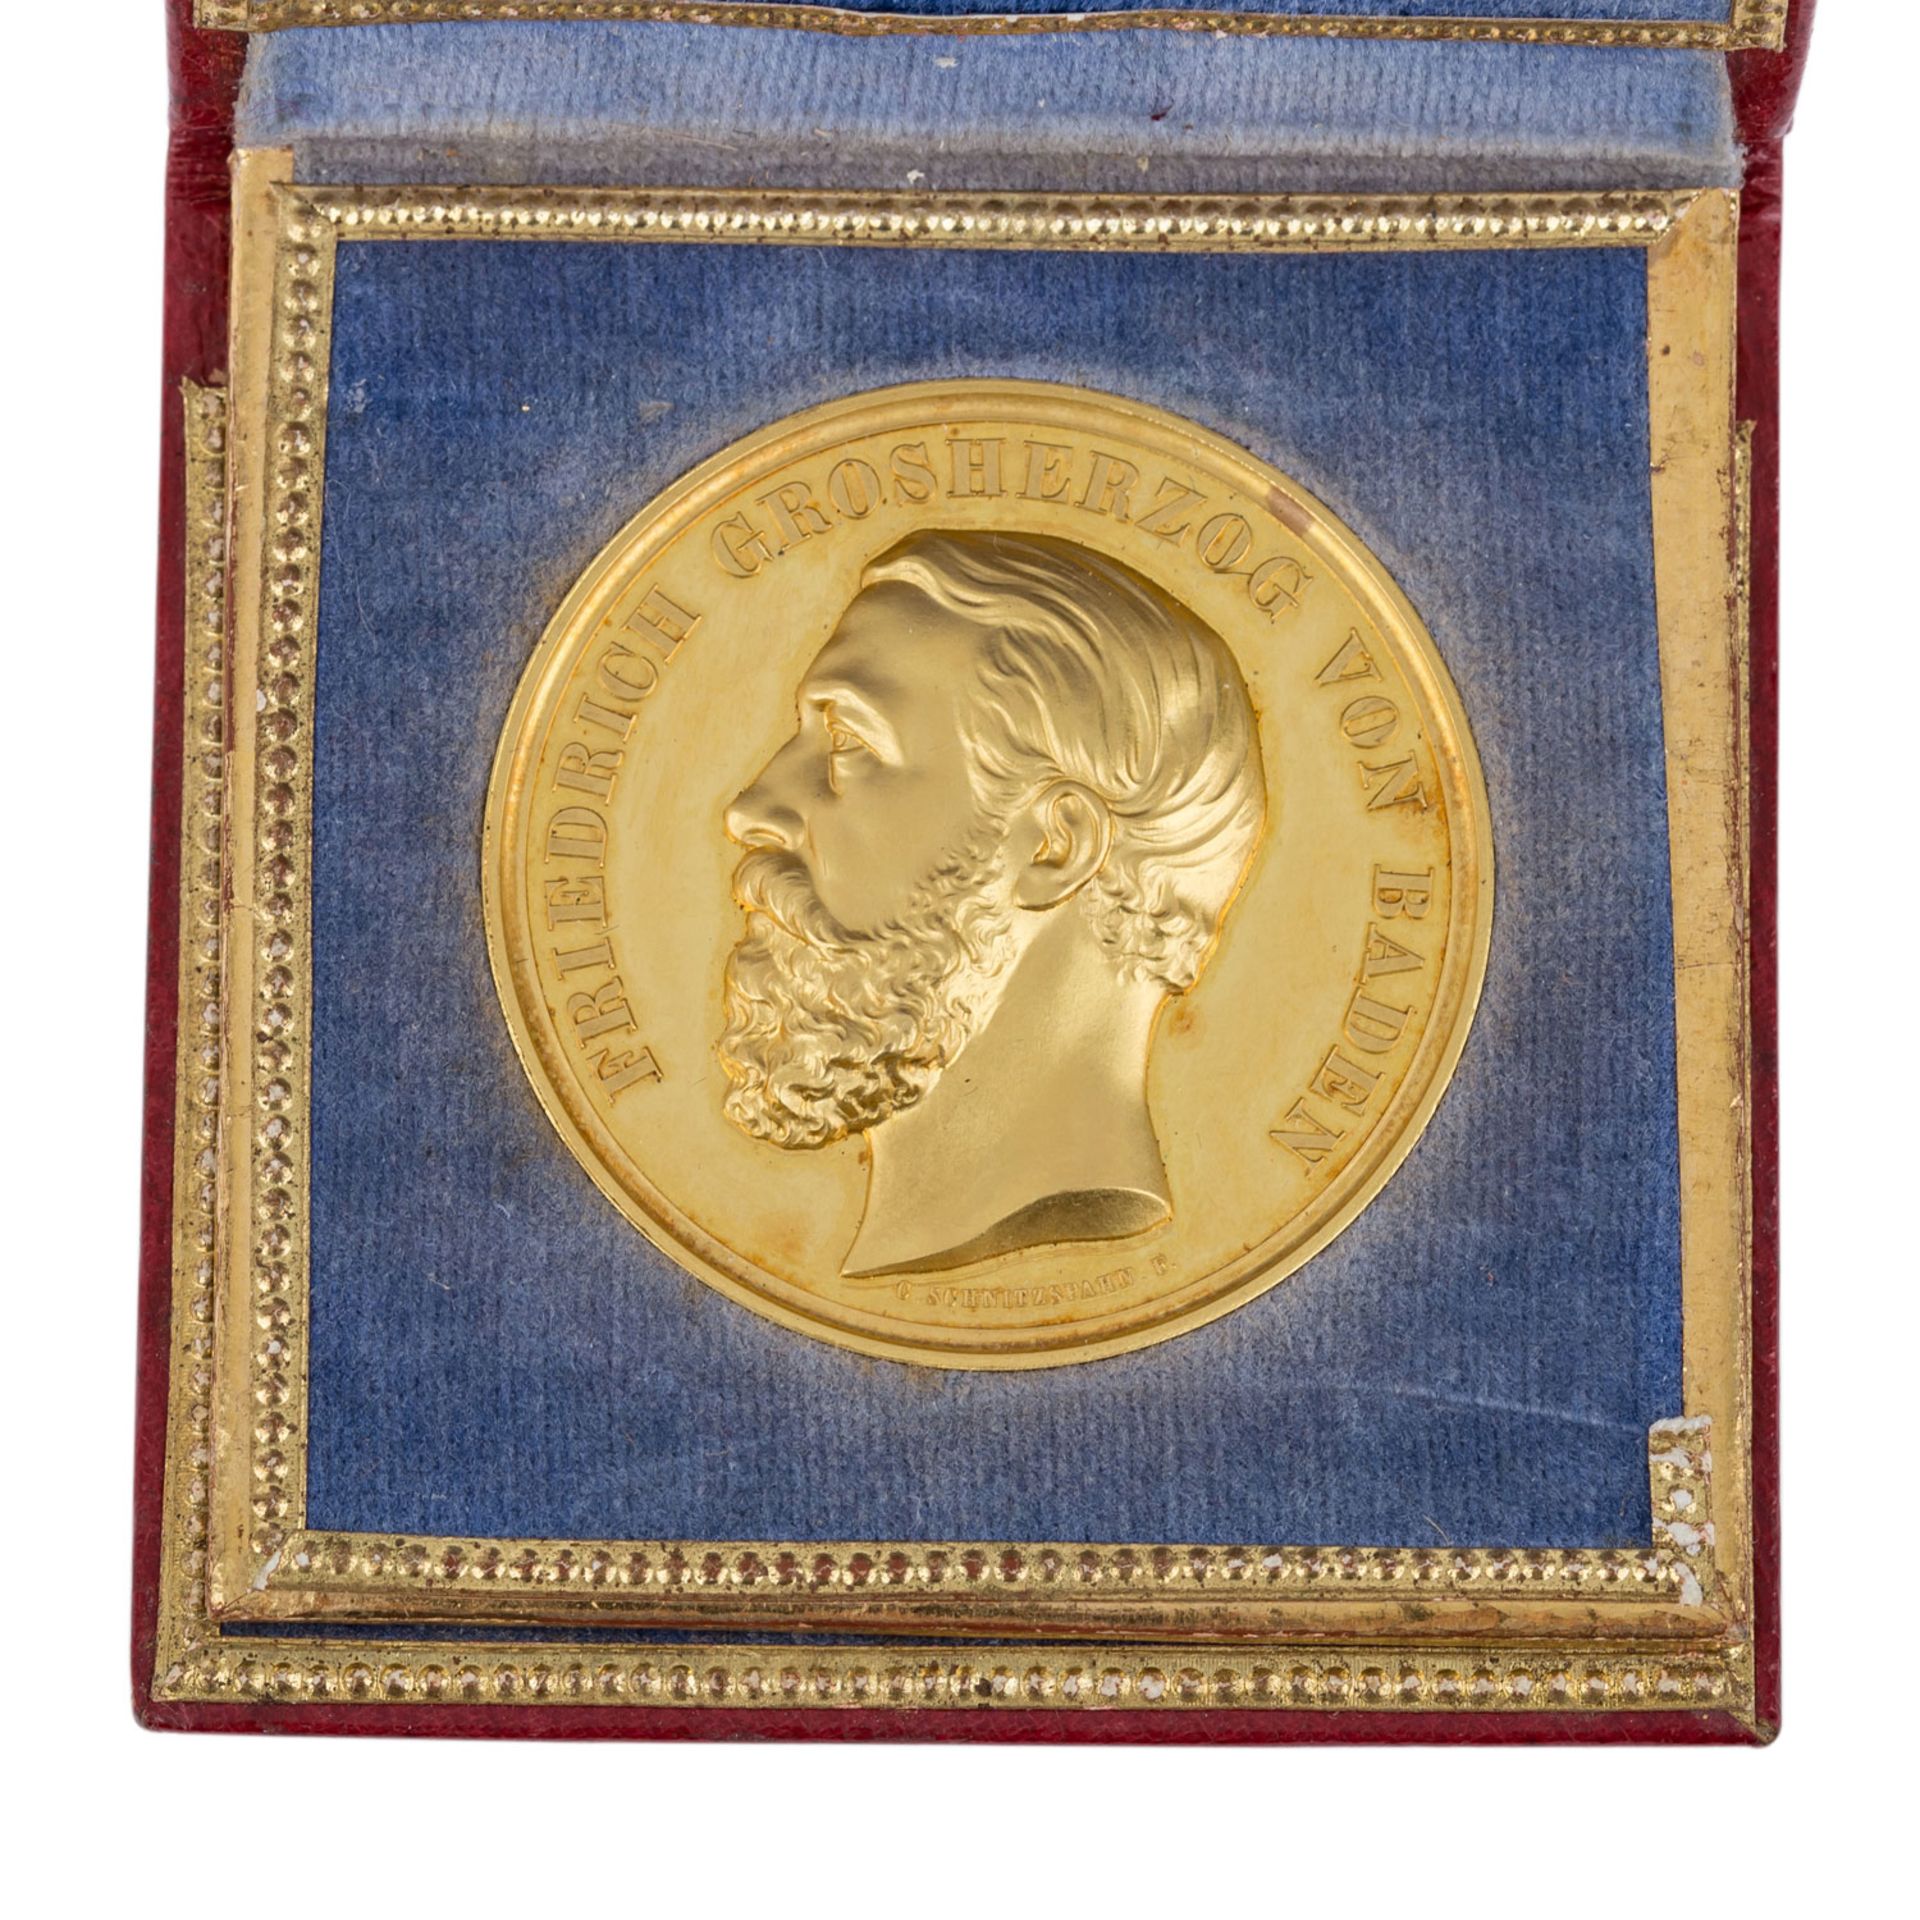 Baden-Durlach - Goldene Prämienmedaille o.J. "FuerLandwirtschaft, Gewerbe und Handel", überreicht an - Bild 2 aus 5